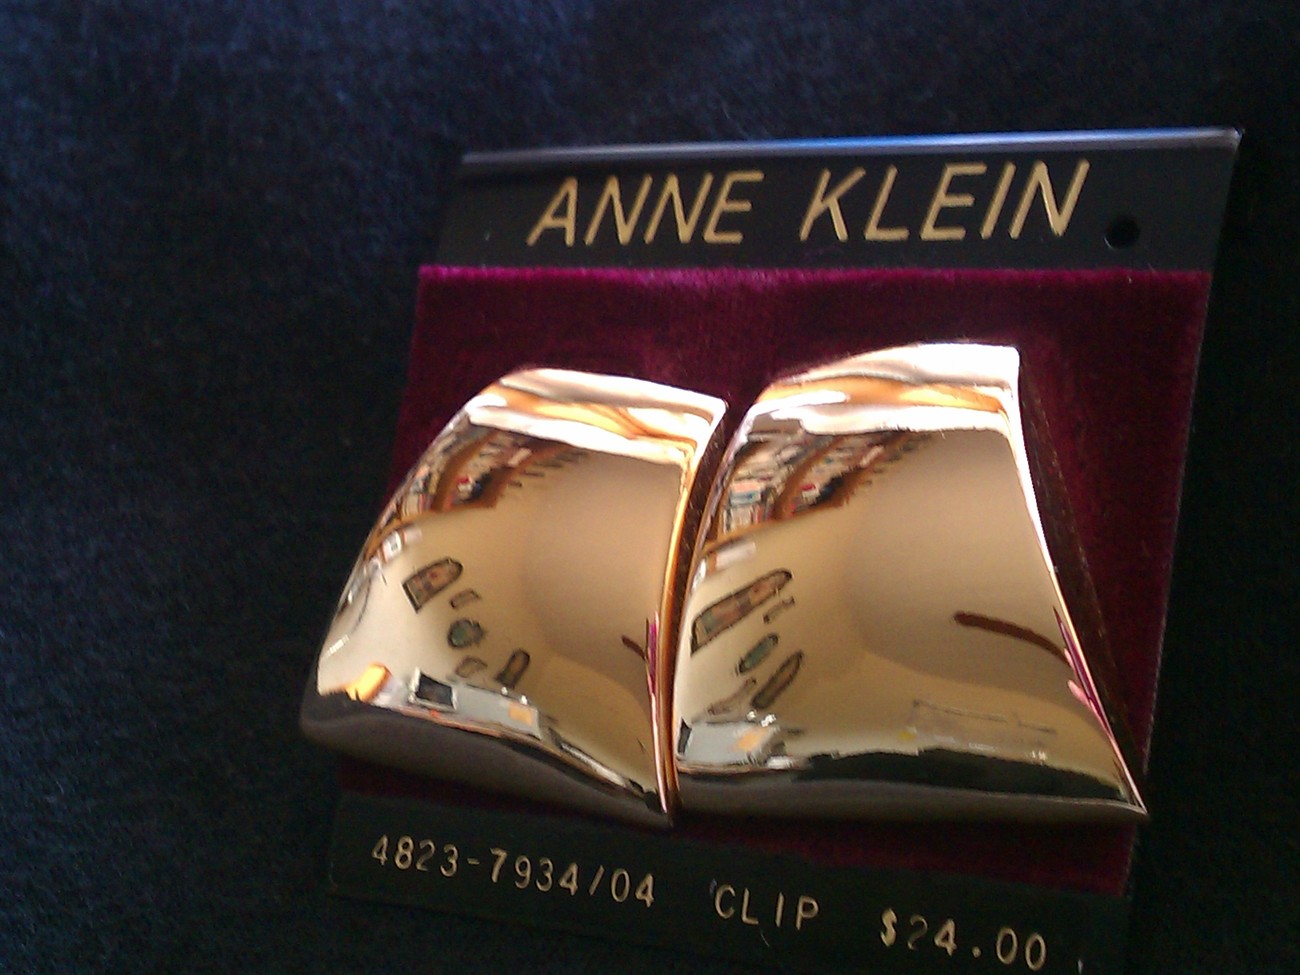 Ann Klein Clip On Earrings - $24.00